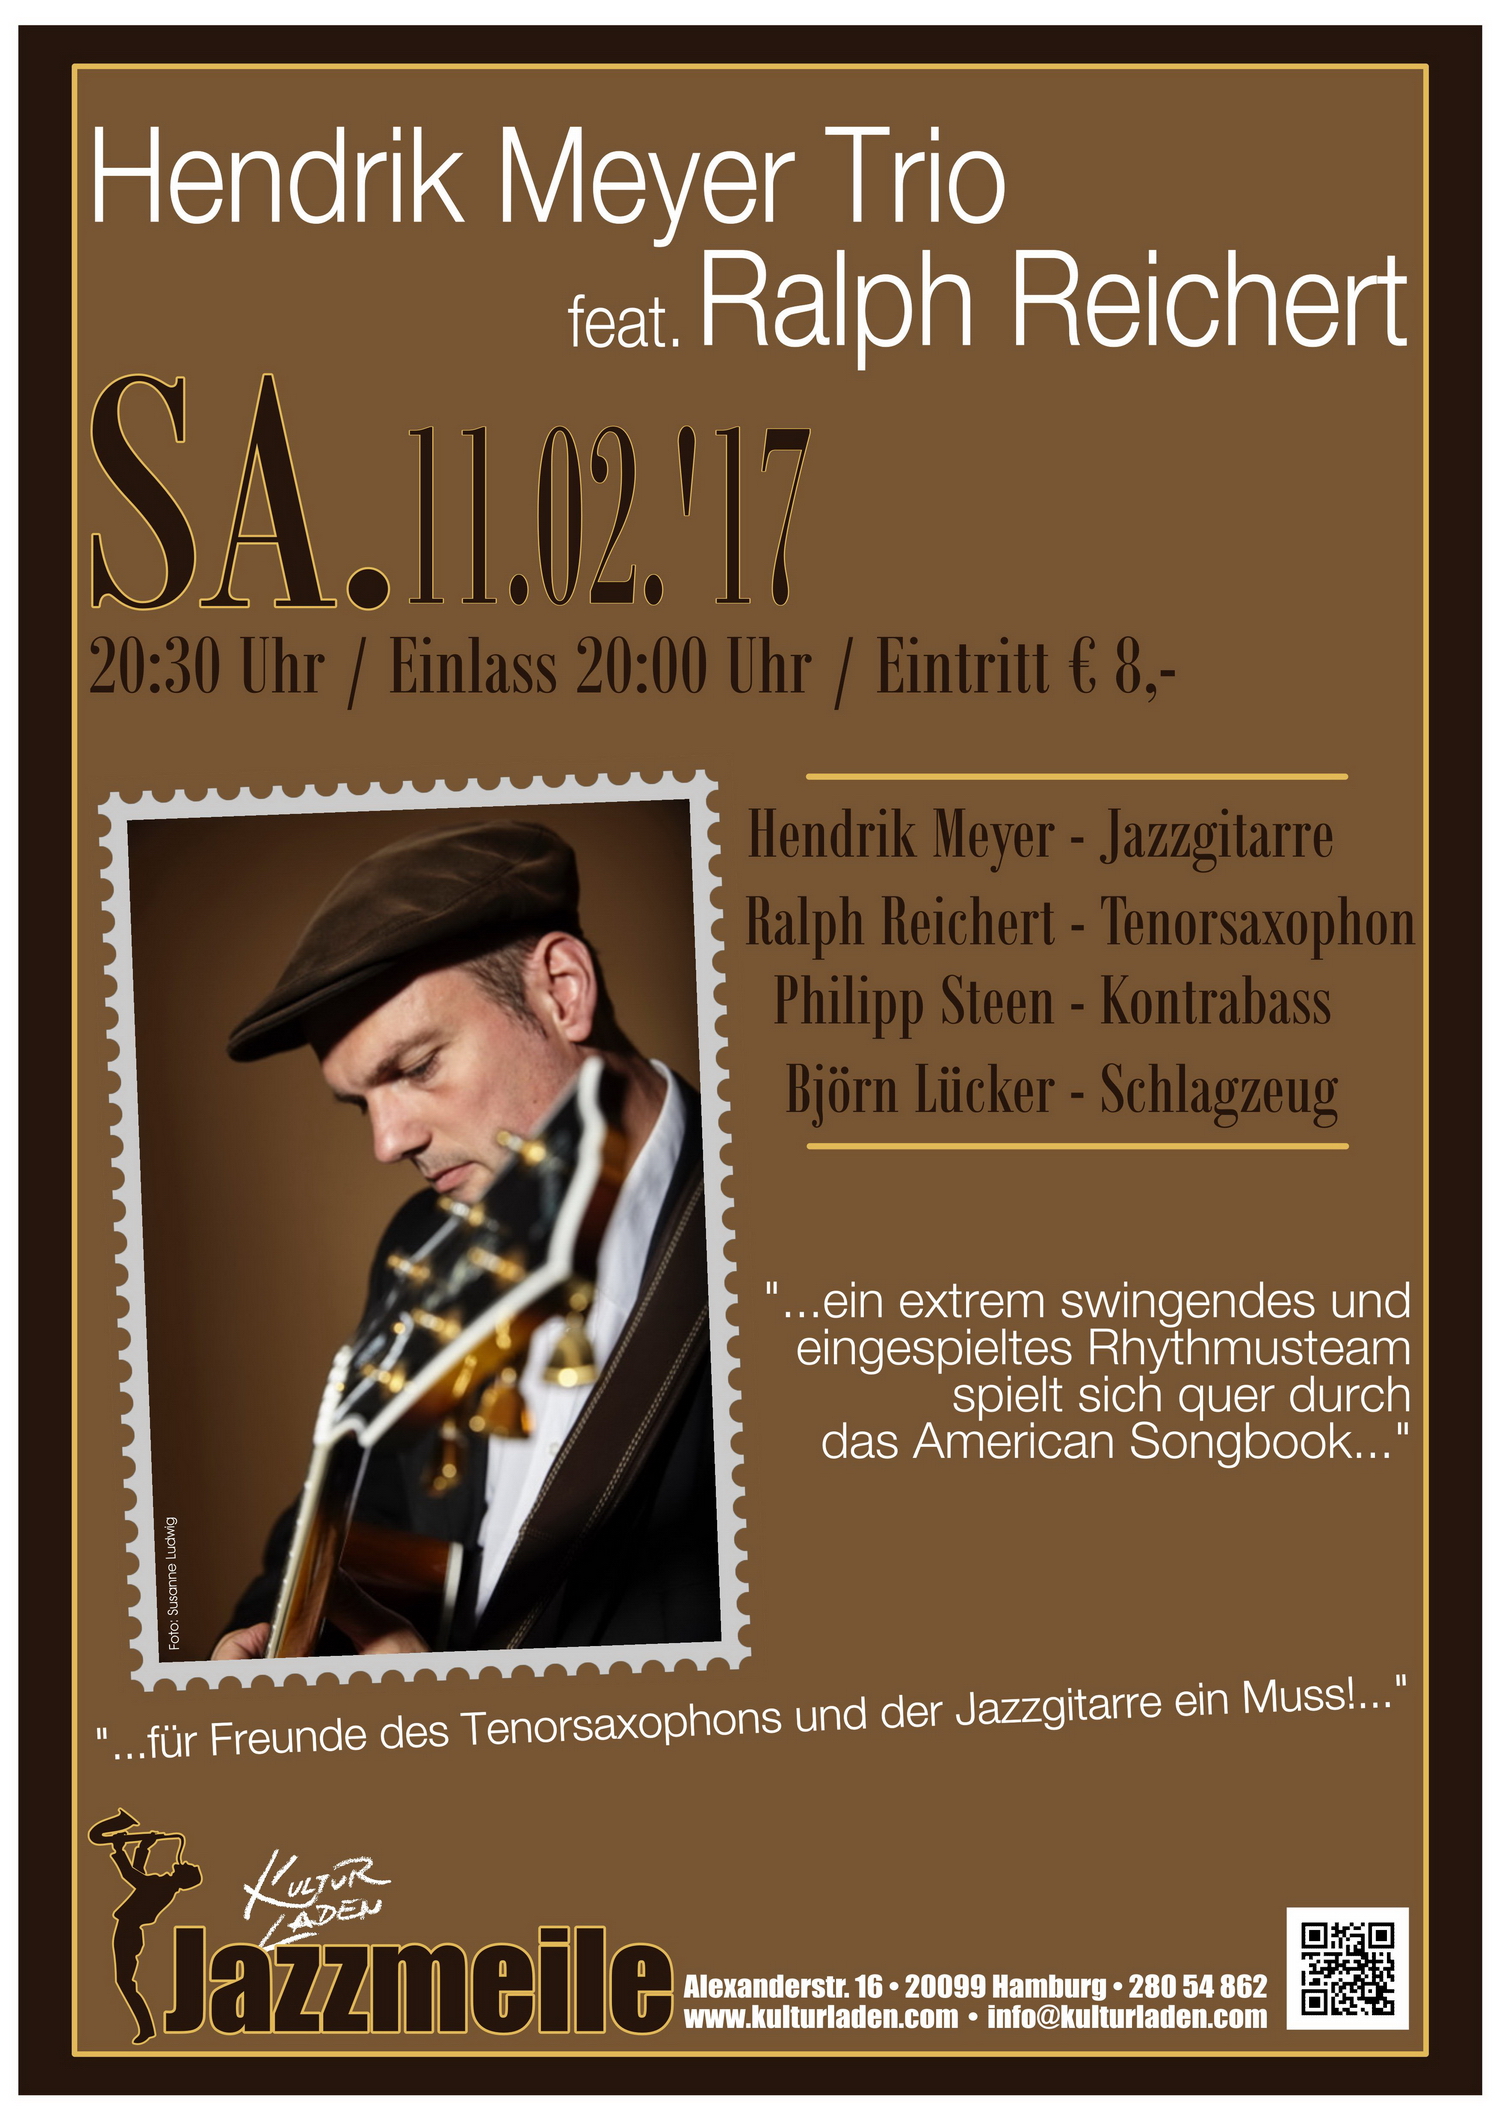 Plakat Mail Jazzmeile presents:  Hendrik Meyer Trio feat. Ralph Reichert jazzmeile